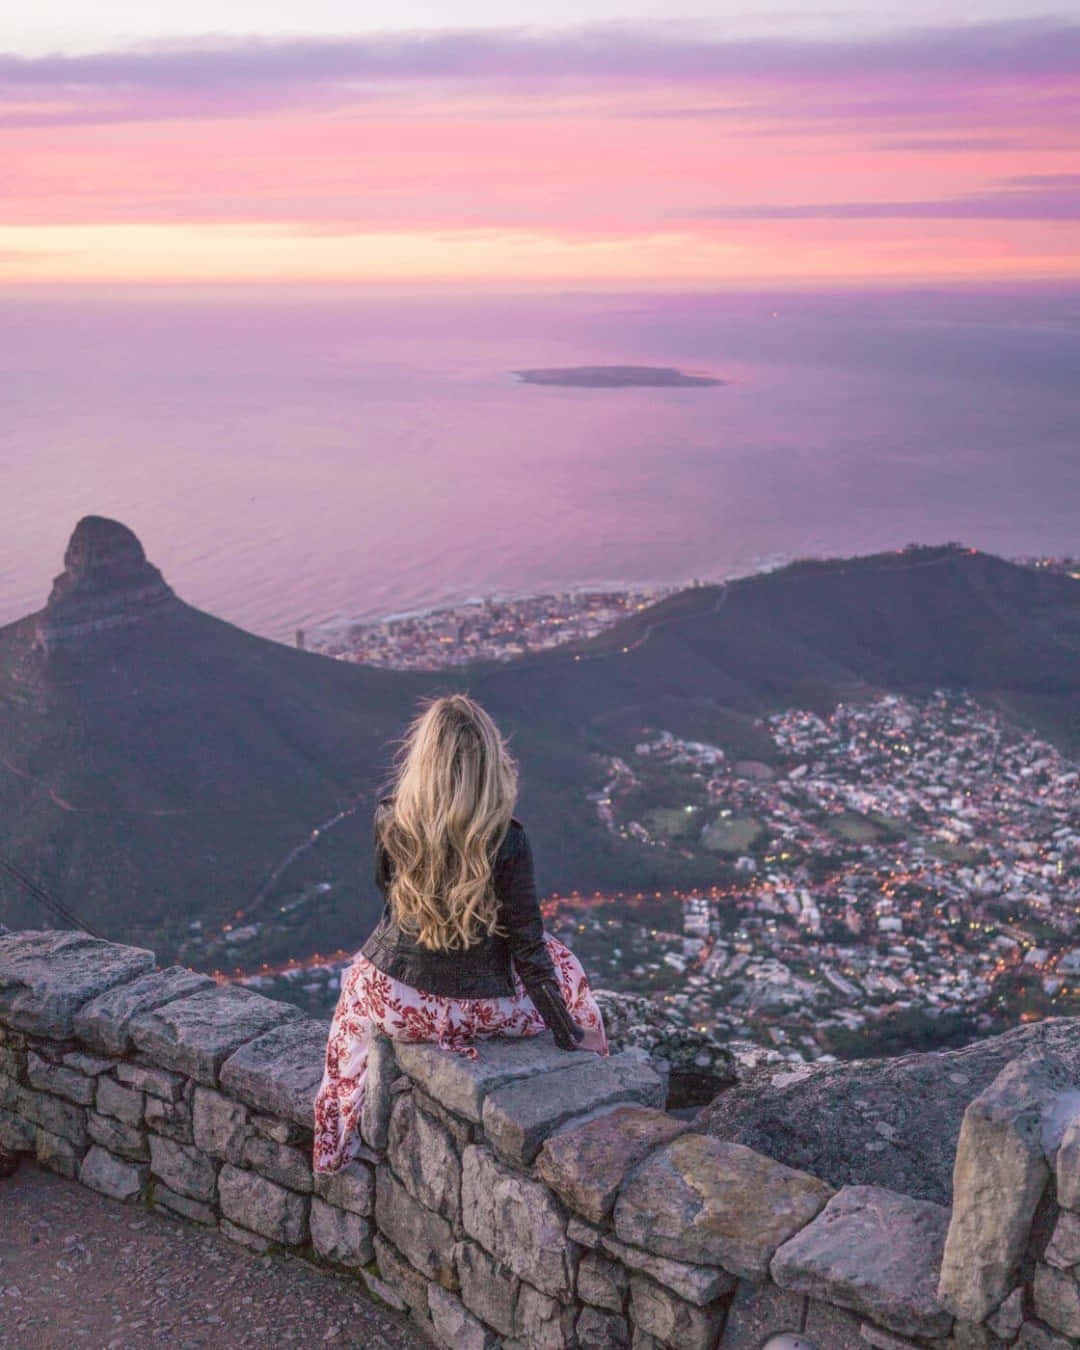 Unadonna È Seduta Su Una Roccia Che Si Affaccia Sulla Città Di Cape Town.